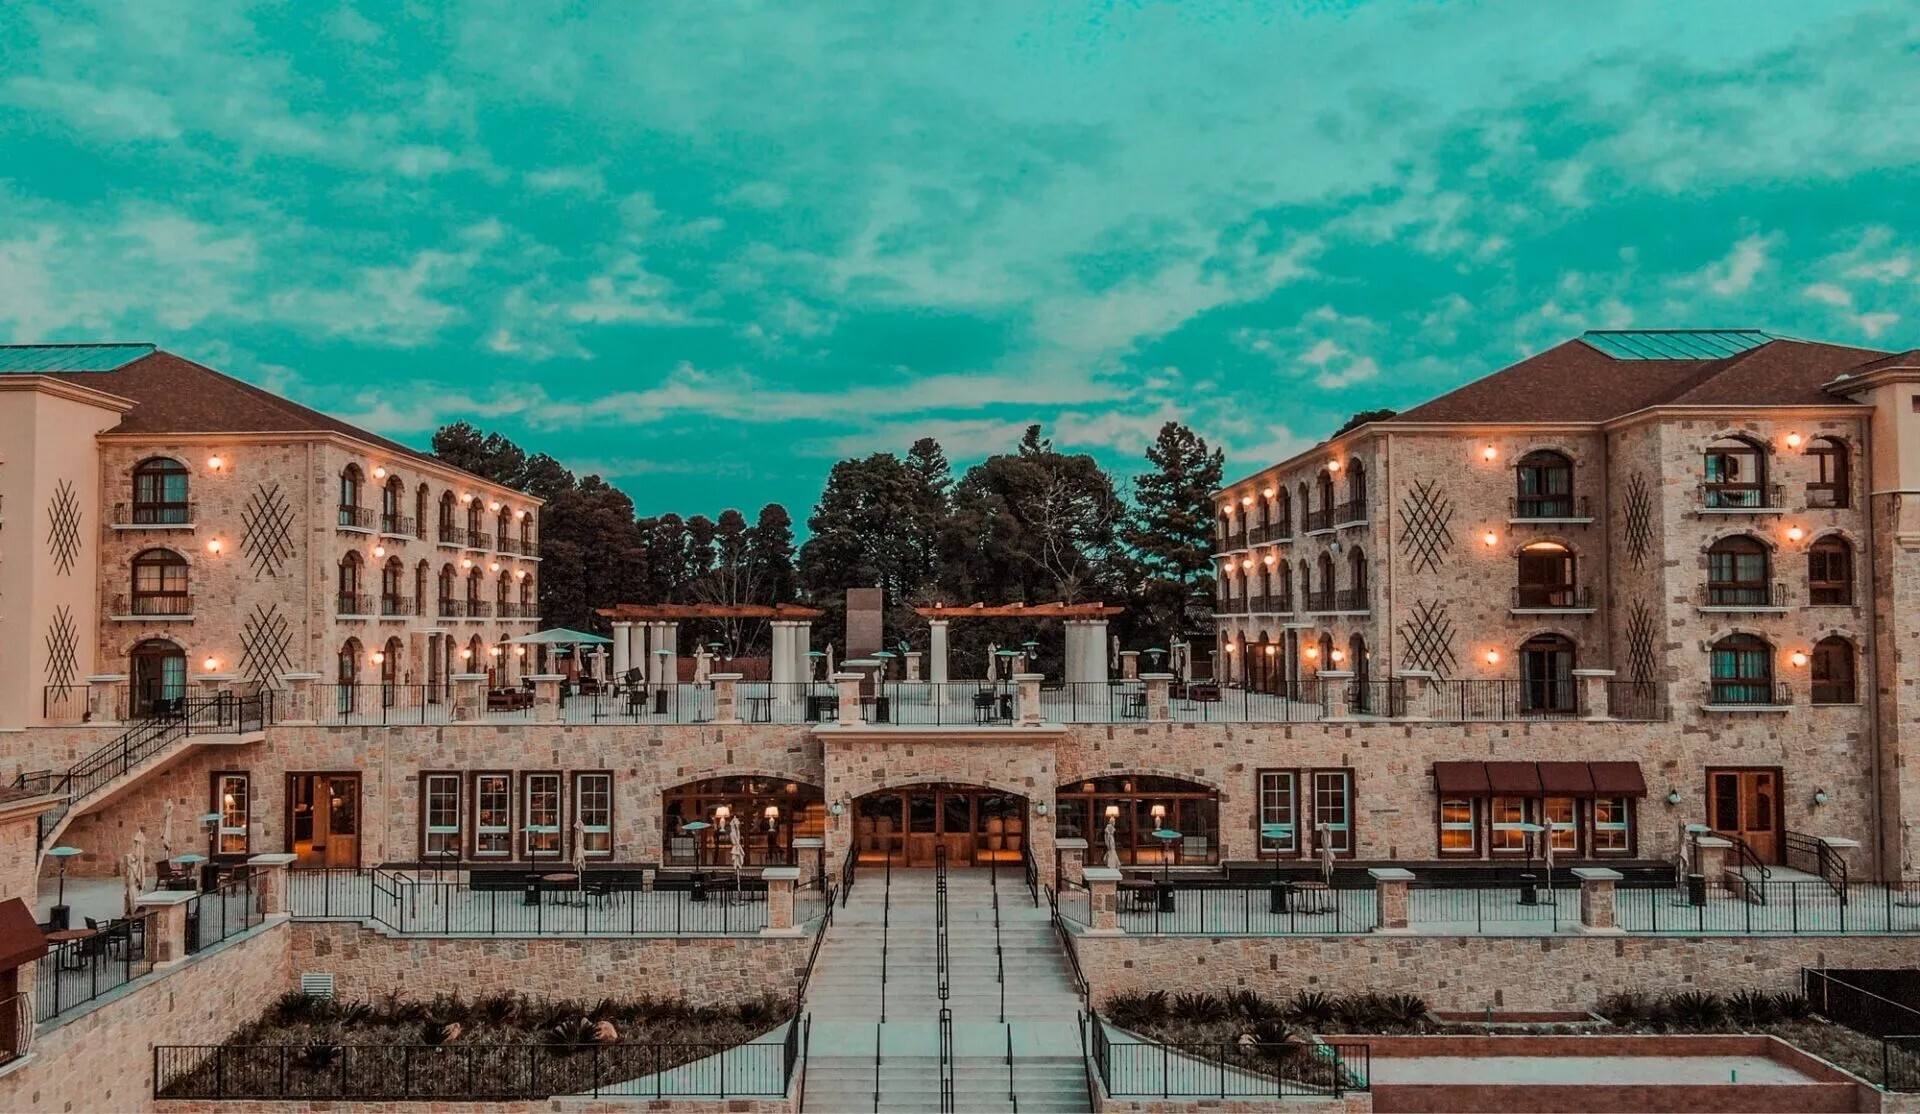 Vista panorâmica do resort Buona Vitta, em Gramado (RS), com sua arquitetura inspirada na região italiana da Toscana